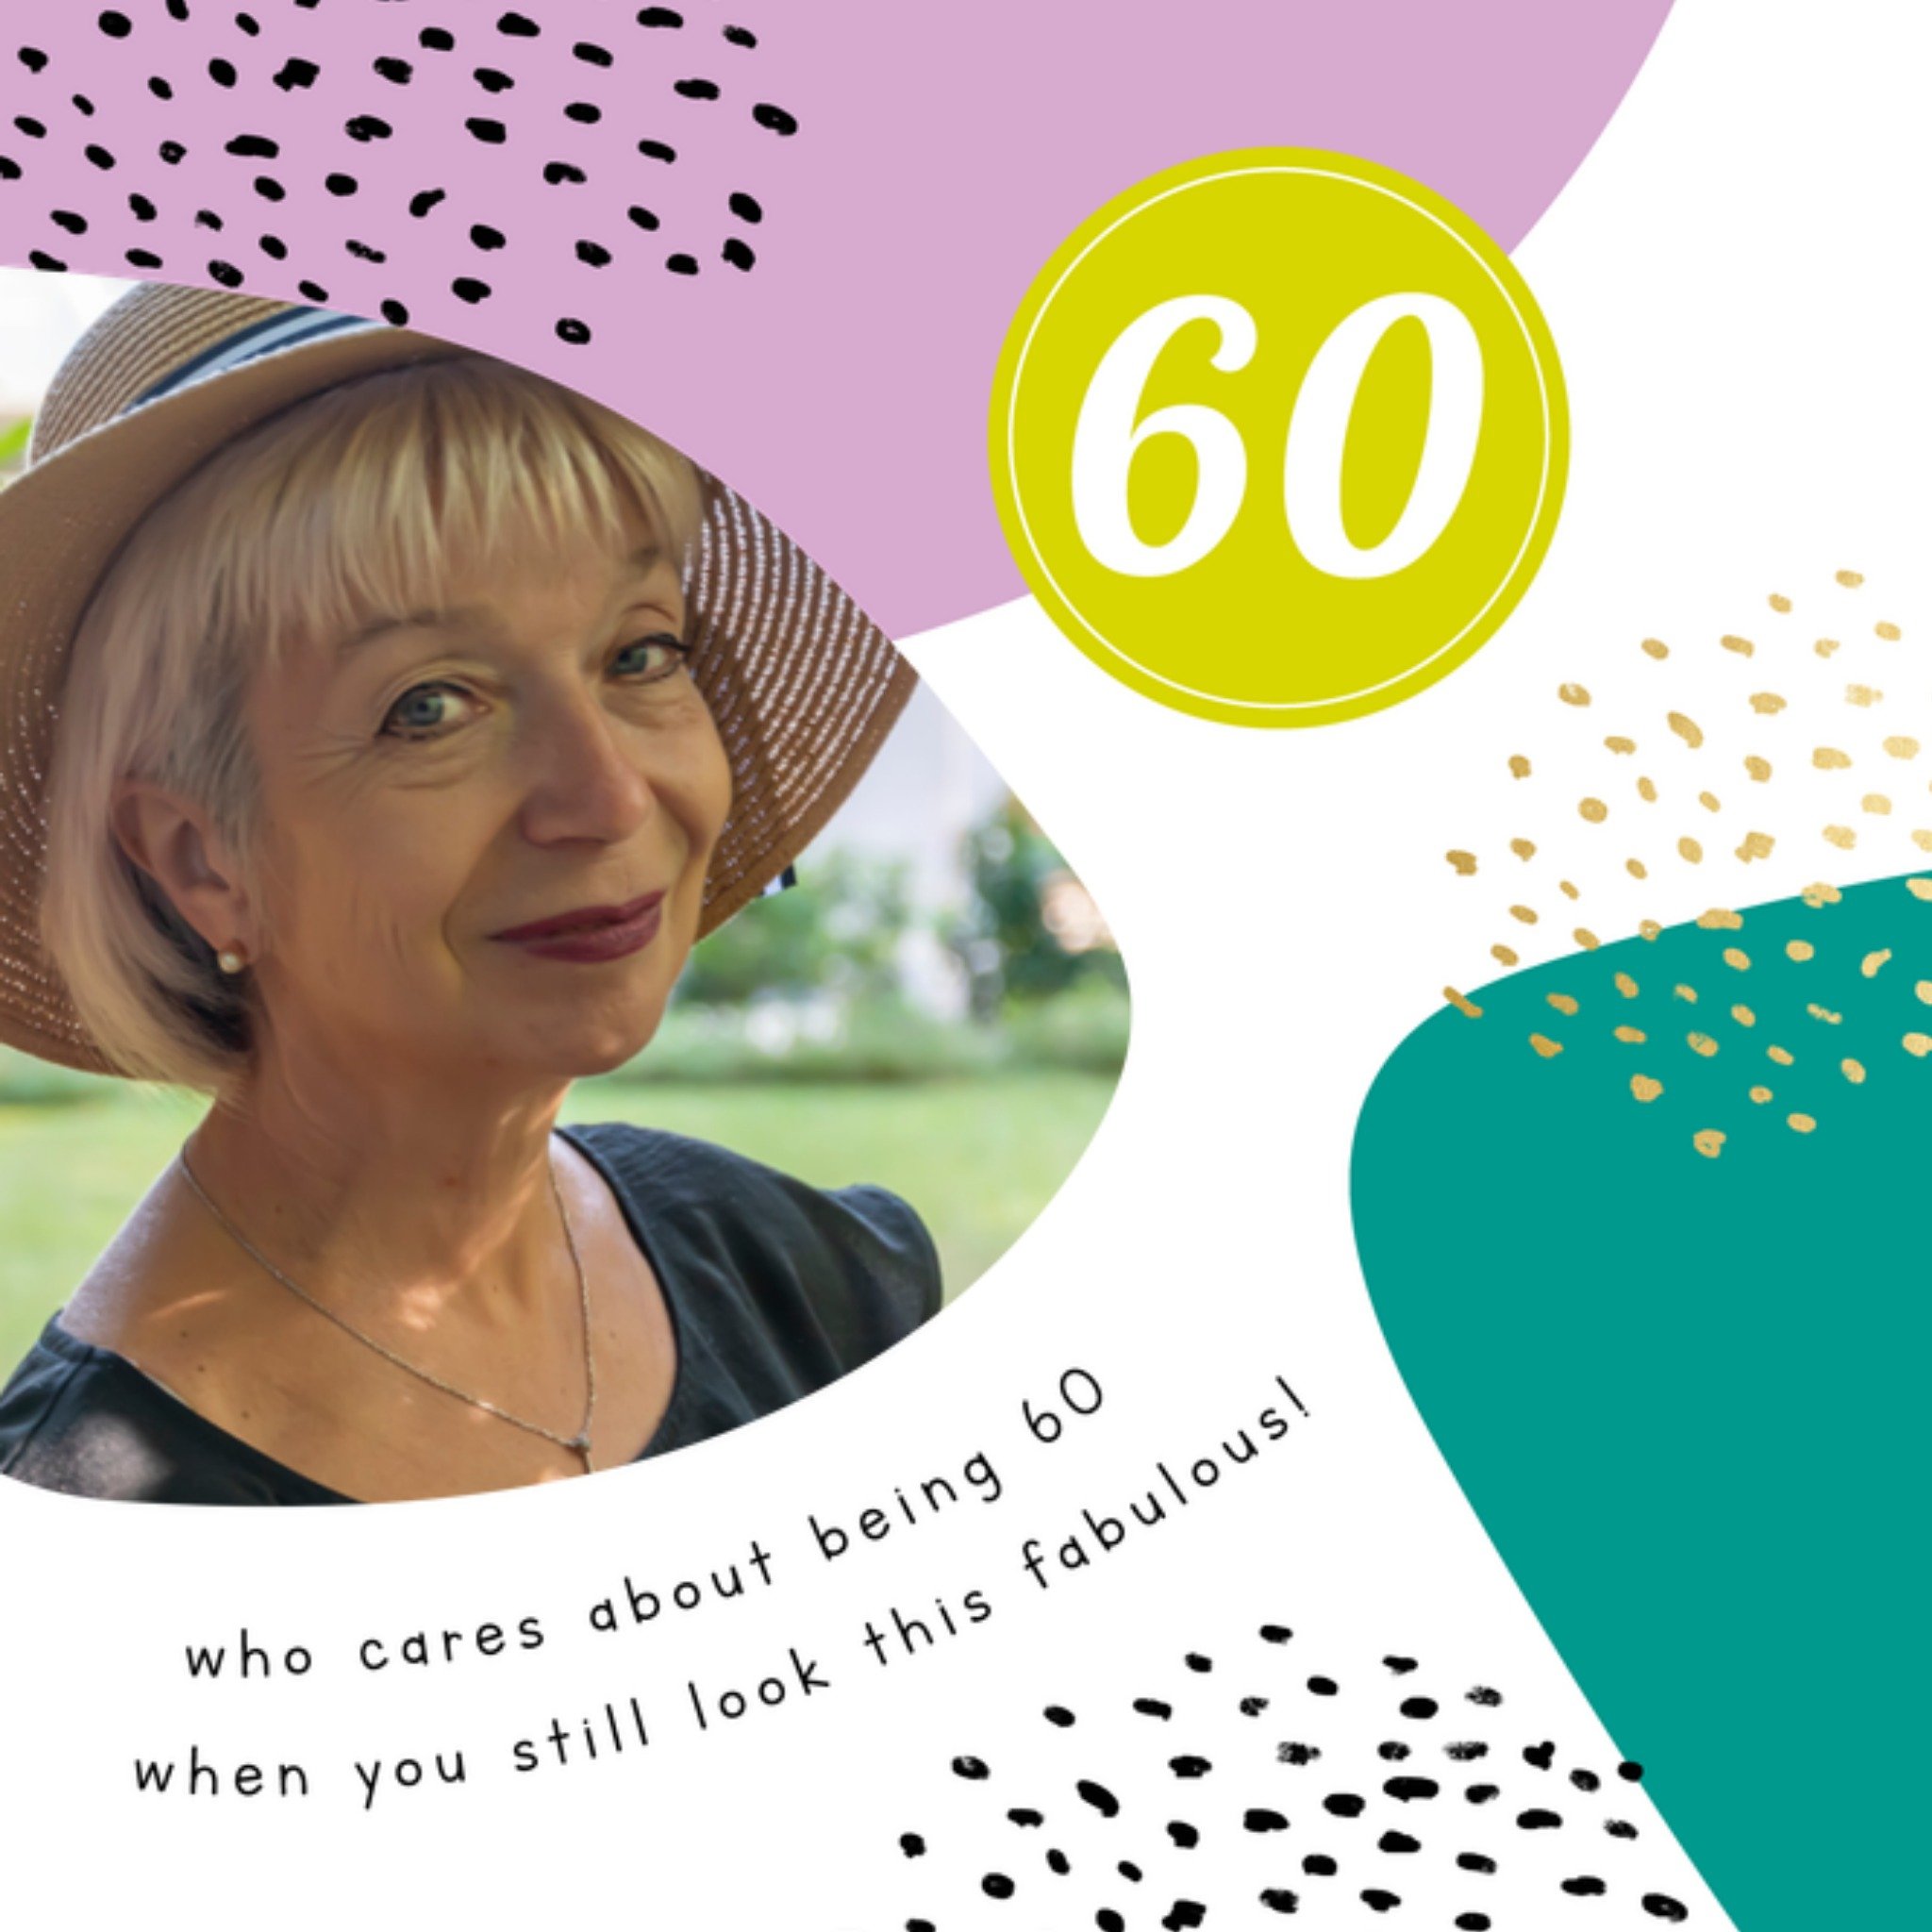 Verjaardagskaart - Who cares about being 60 when you still look this fabulous! - Fotokaart